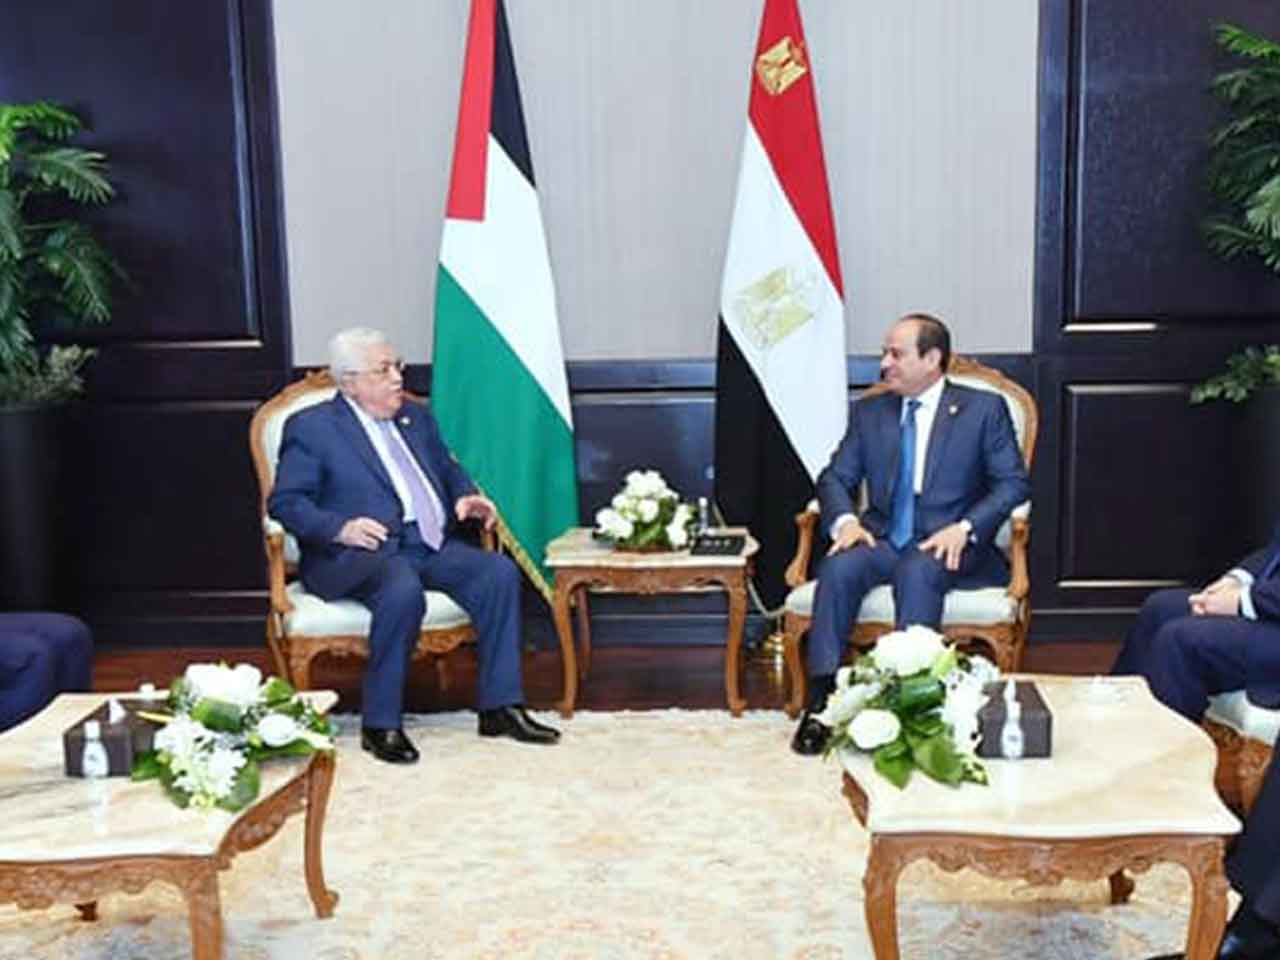  دعم القضية الفلسطينية وإعادة إحياء عملية السلام  تتصدر لقاء الرئيس السيسي و أبومازن 